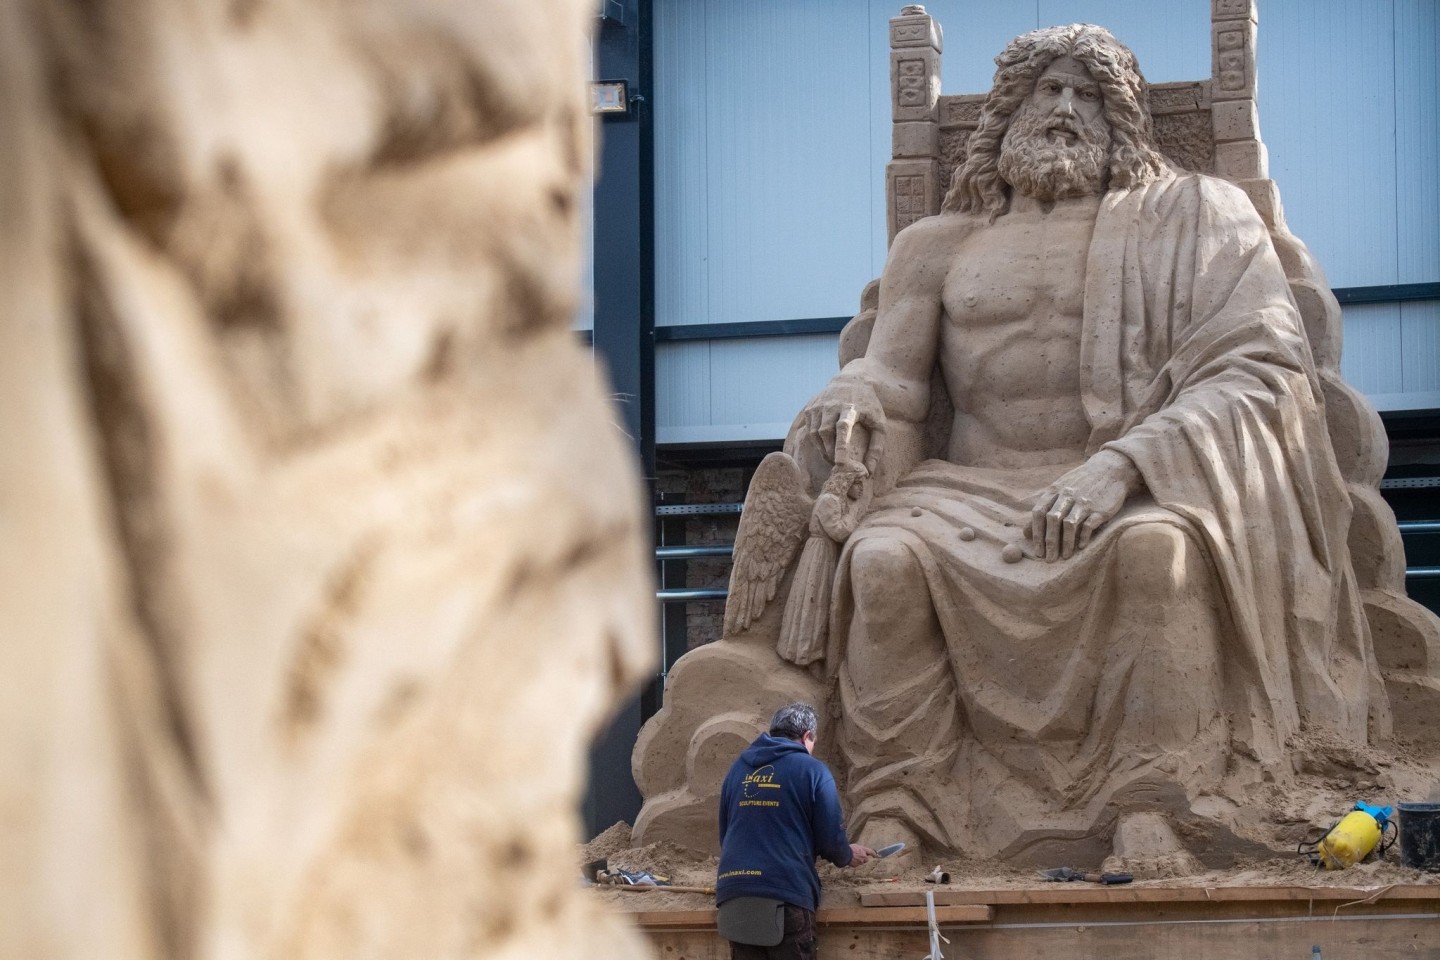 Ein Mann arbeitet an einer Sandskulptur des Göttervaters Zeus auf seinem Thron.